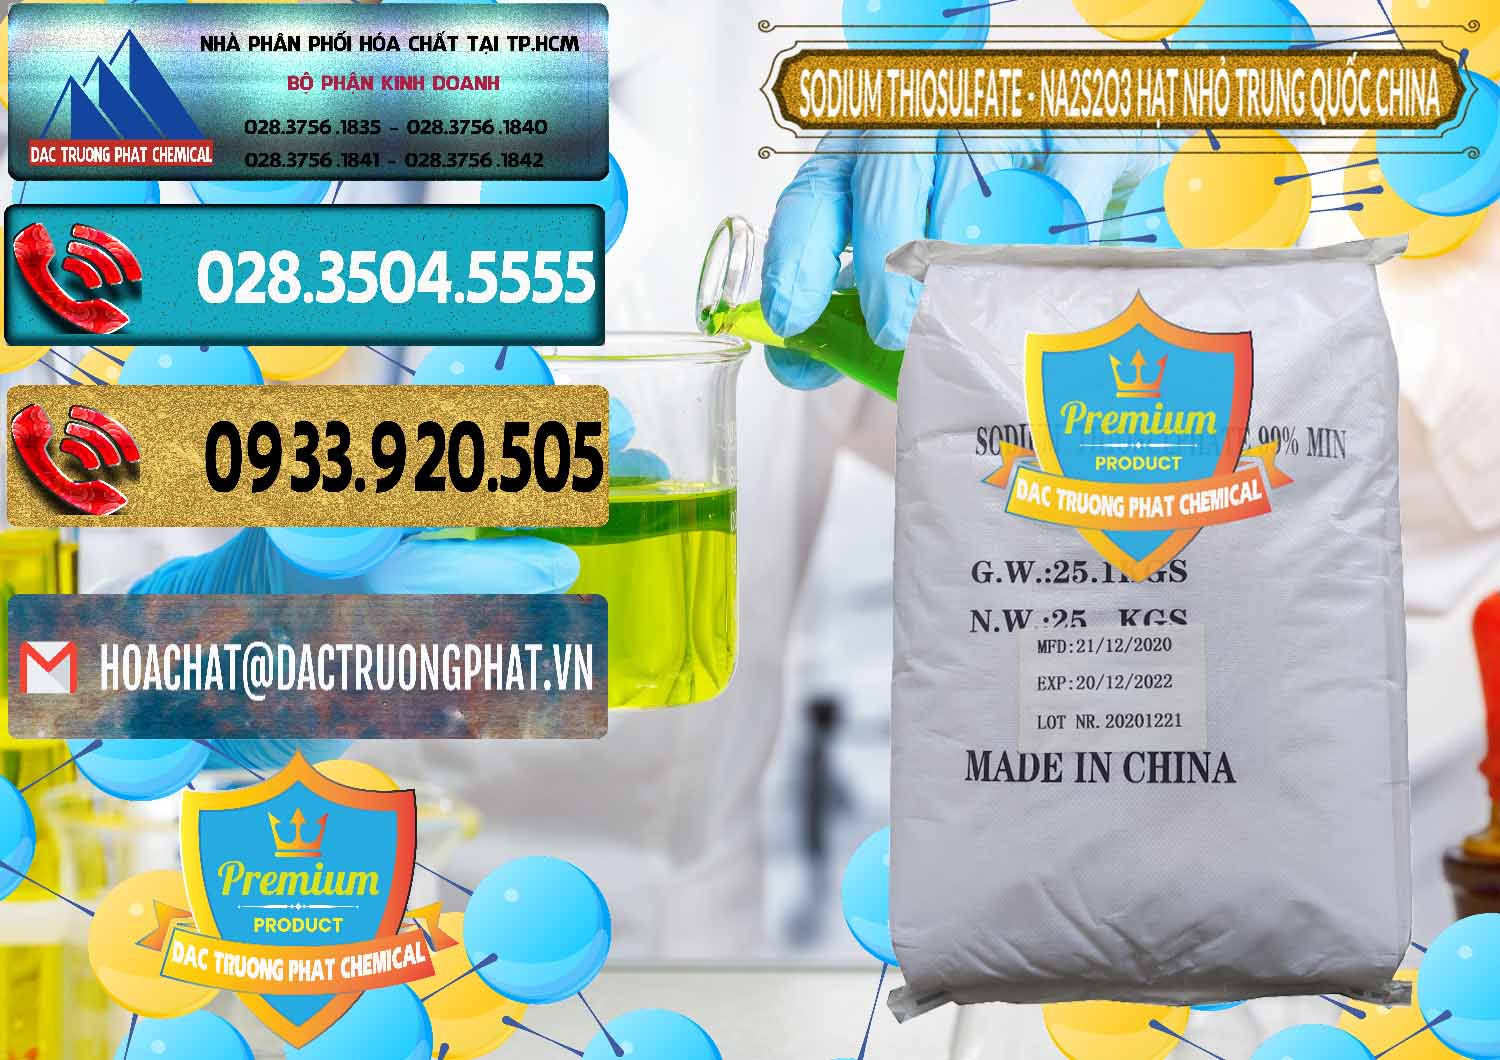 Công ty bán - cung cấp Sodium Thiosulfate - NA2S2O3 Hạt Nhỏ Trung Quốc China - 0204 - Công ty chuyên cung cấp & kinh doanh hóa chất tại TP.HCM - hoachatdetnhuom.com